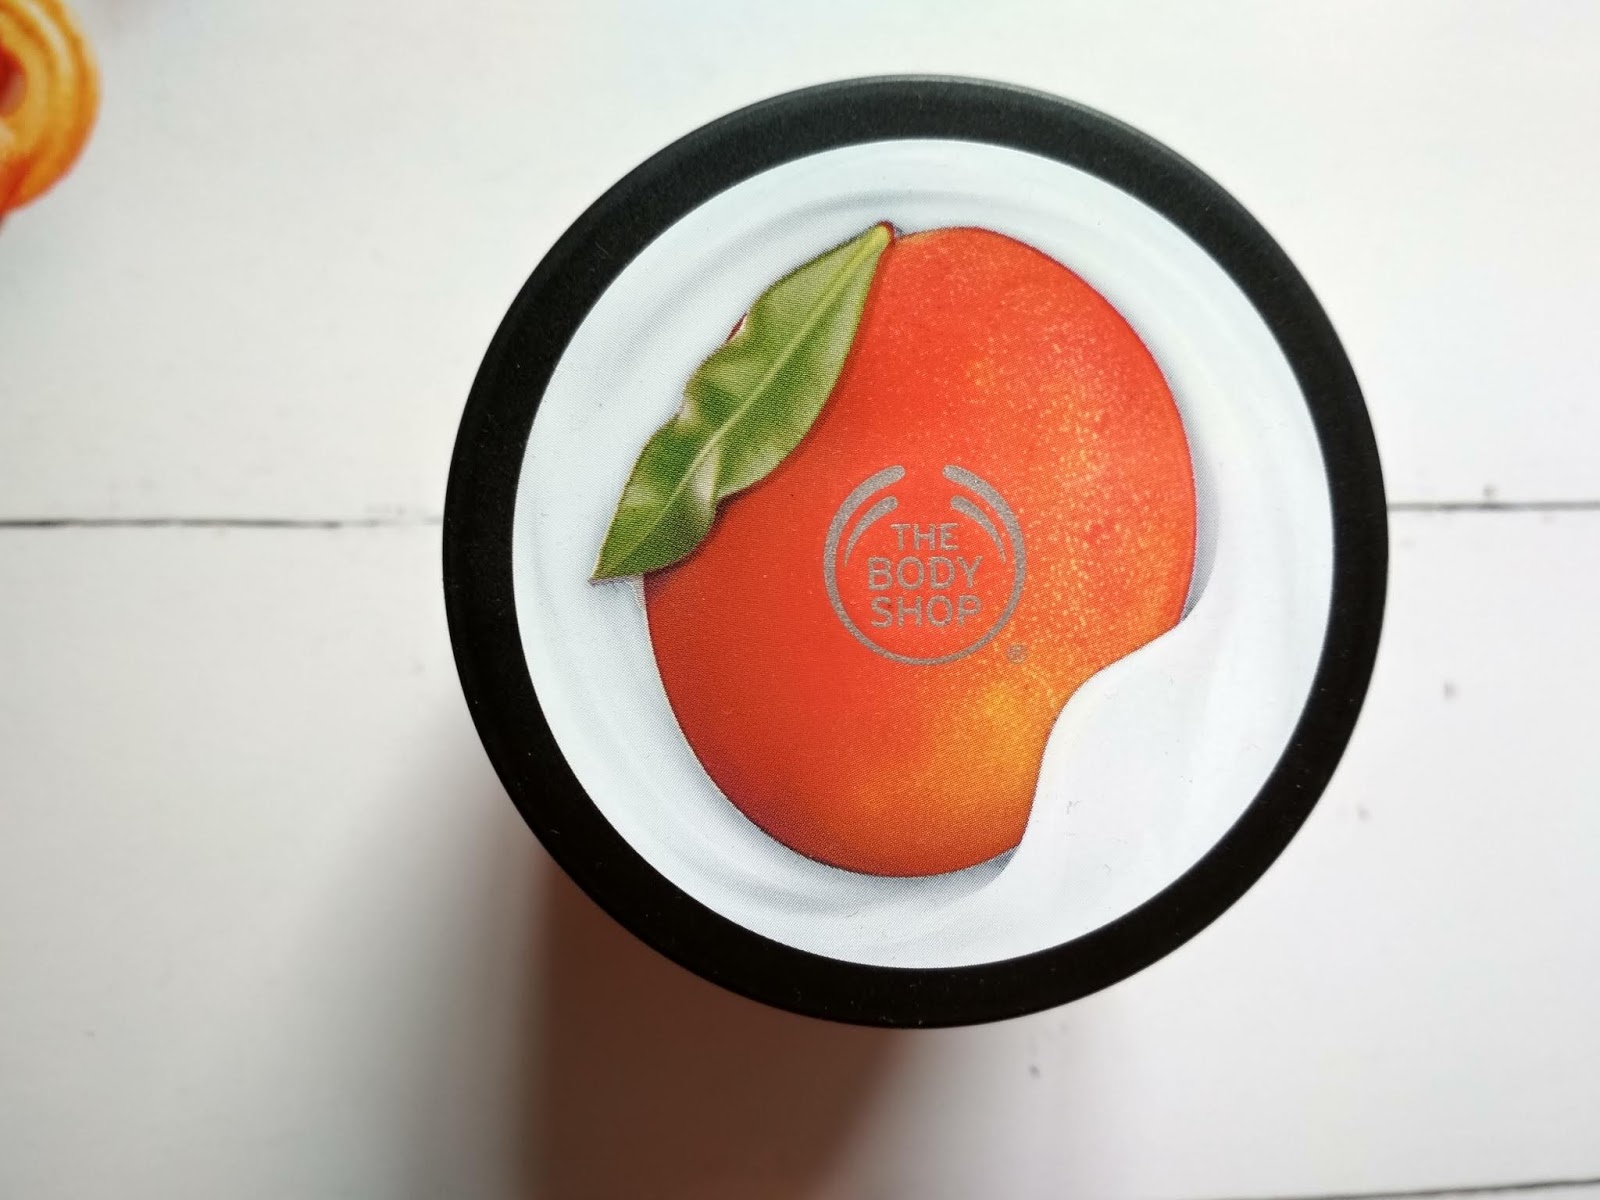 Recenzja - The Body Shop jogurt do ciała o zapachu mango | N. o kosmetykach